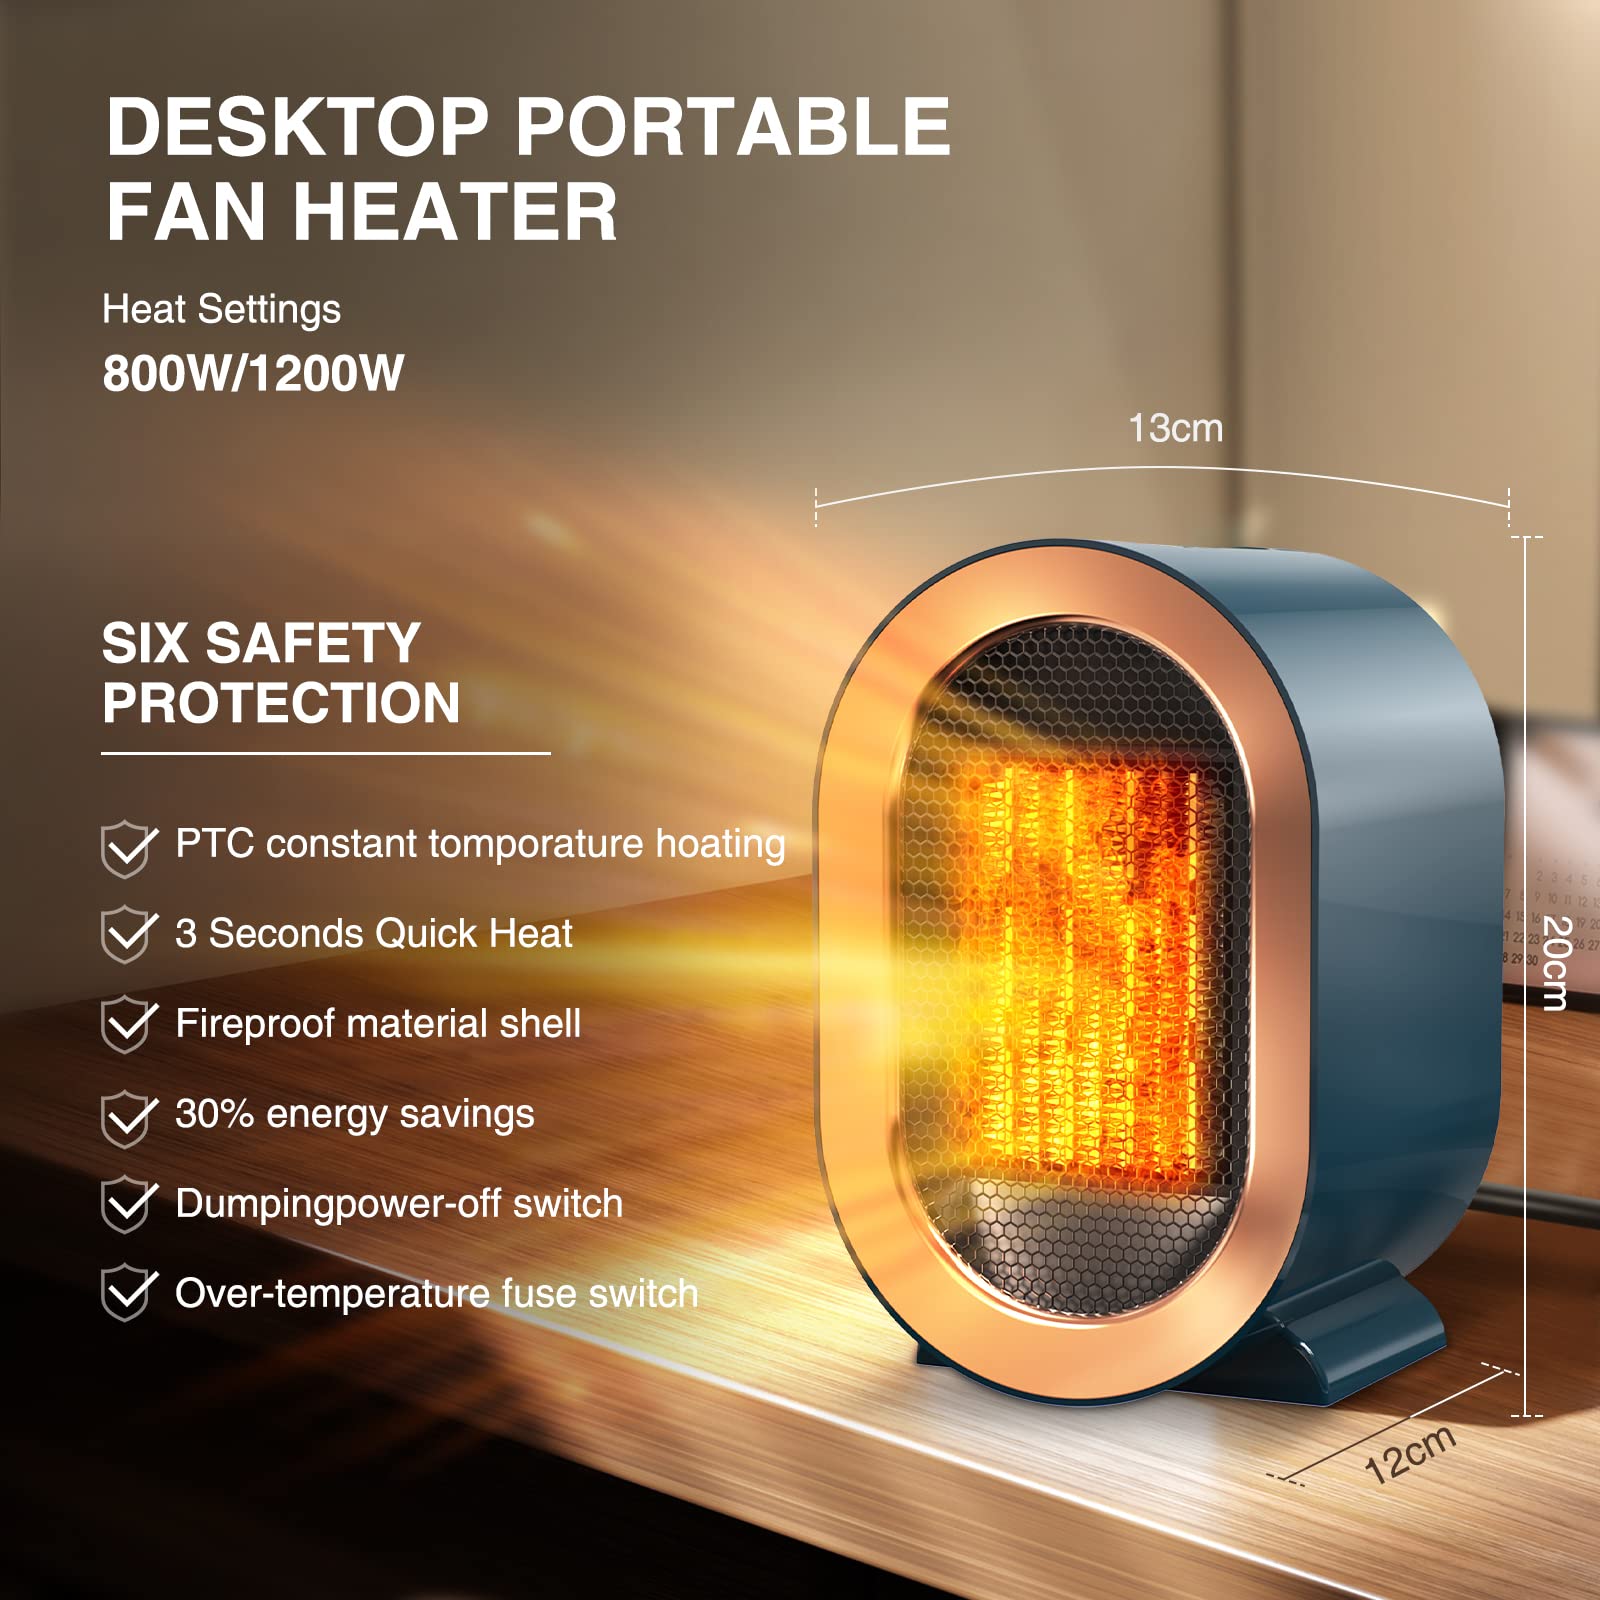 휴대용 팬 히터 PTC 빠른 난방 안전하고 조용한 - 사무실 책상 욕실 작은 방 히터